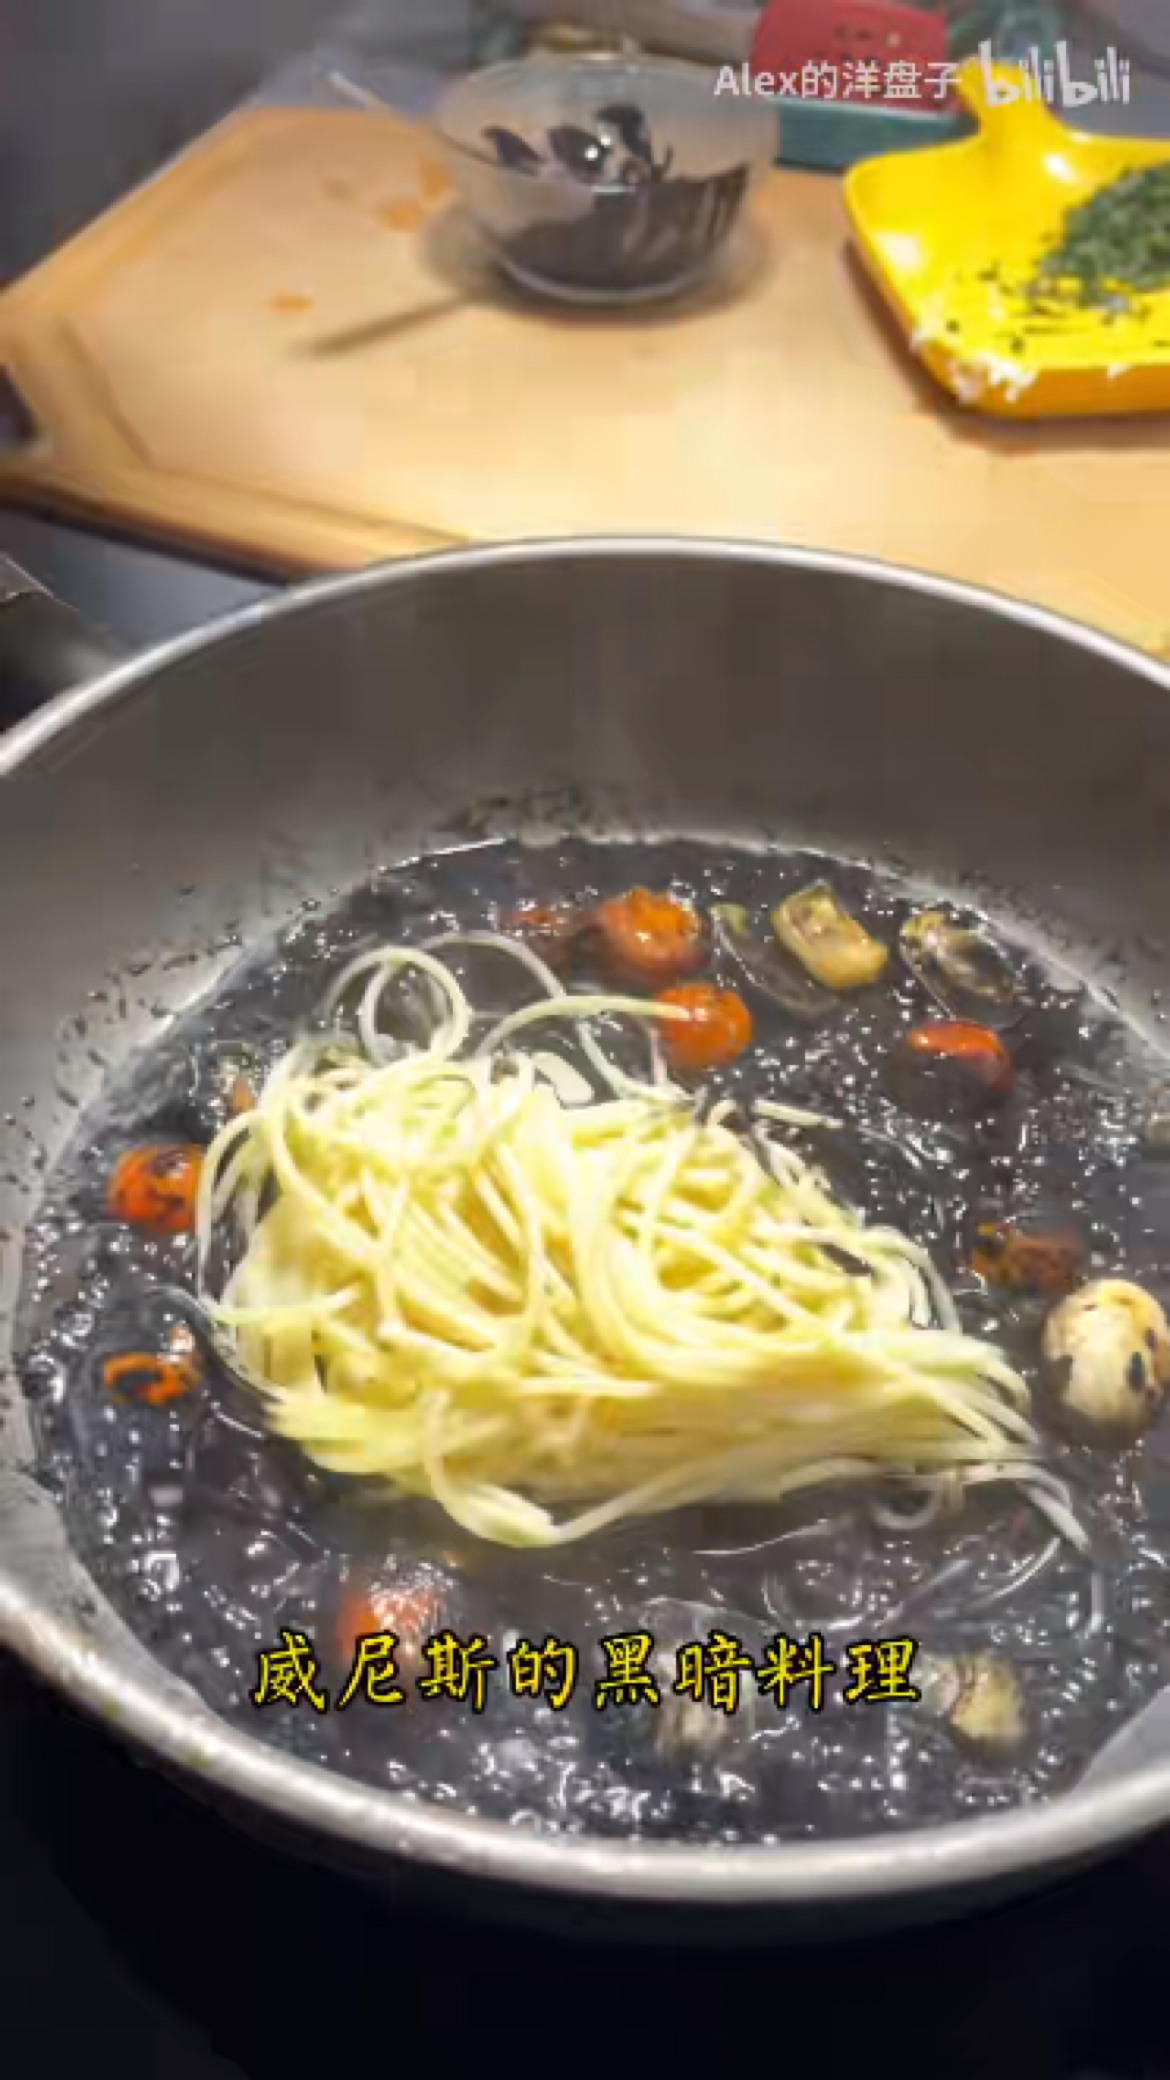 海鲜墨鱼汁意面 | Squid ink pasta with seafood - 知乎